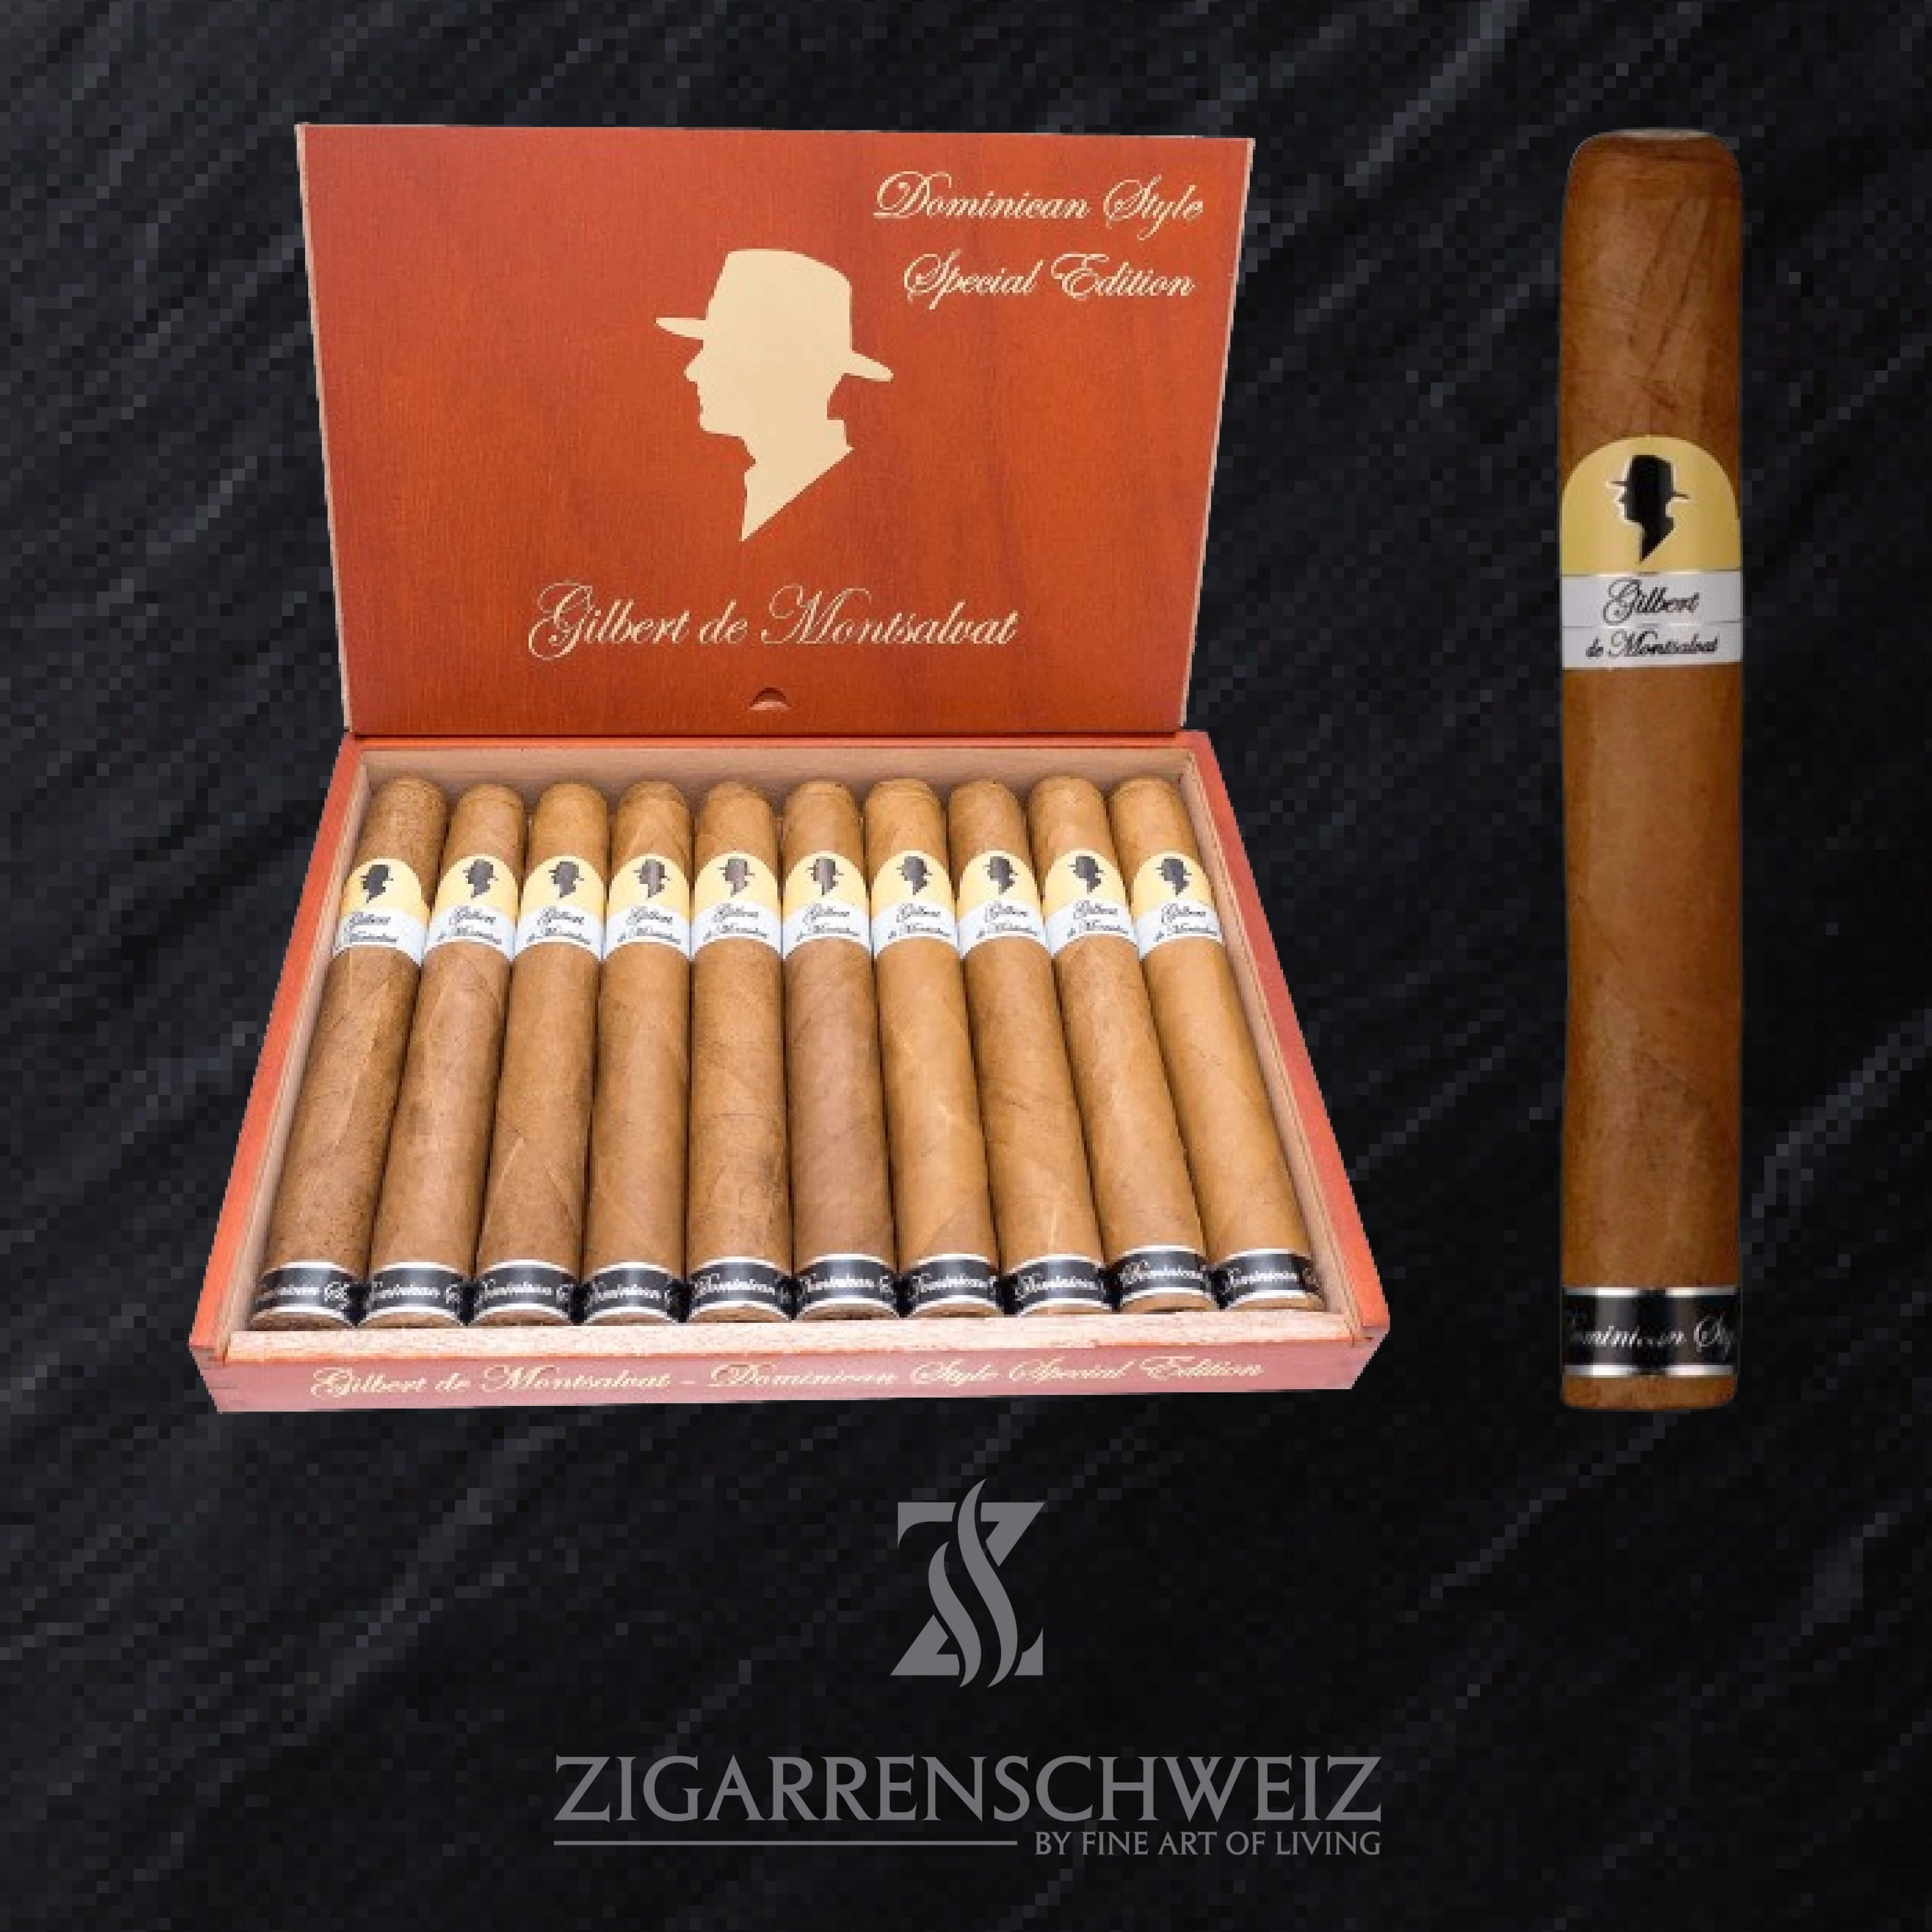 Gilbert de Montsalvat Dominican Style Special Edition Toro Zigarren Kiste offen